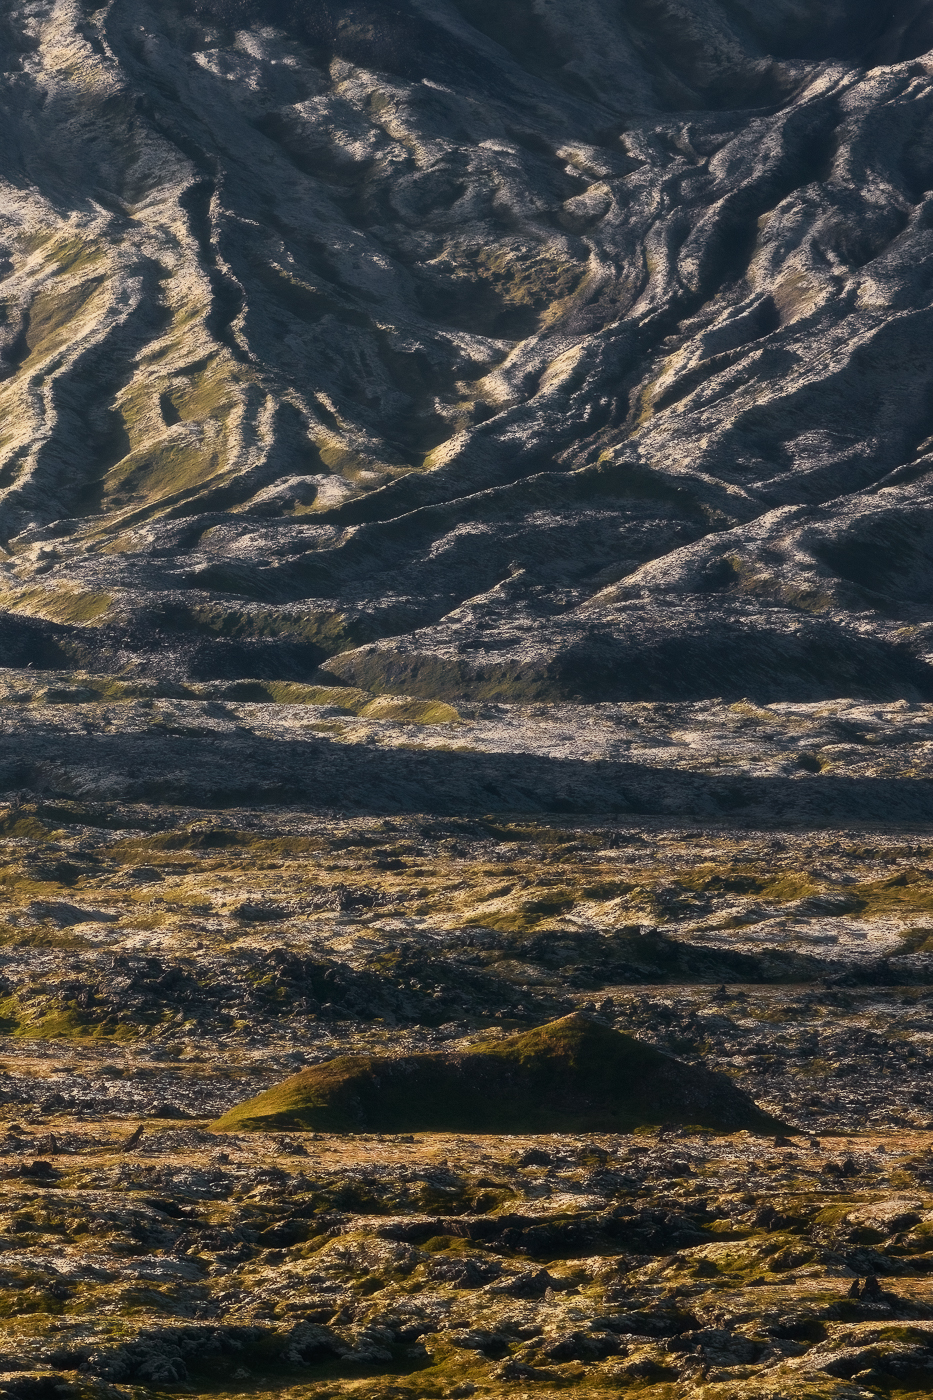 Trascorrono i millenni, ma restano le forme e le trame create dalle remote colate laviche che hanno plasmato quest’isola incredibile. Snæfellsjökull National Park, Islanda.